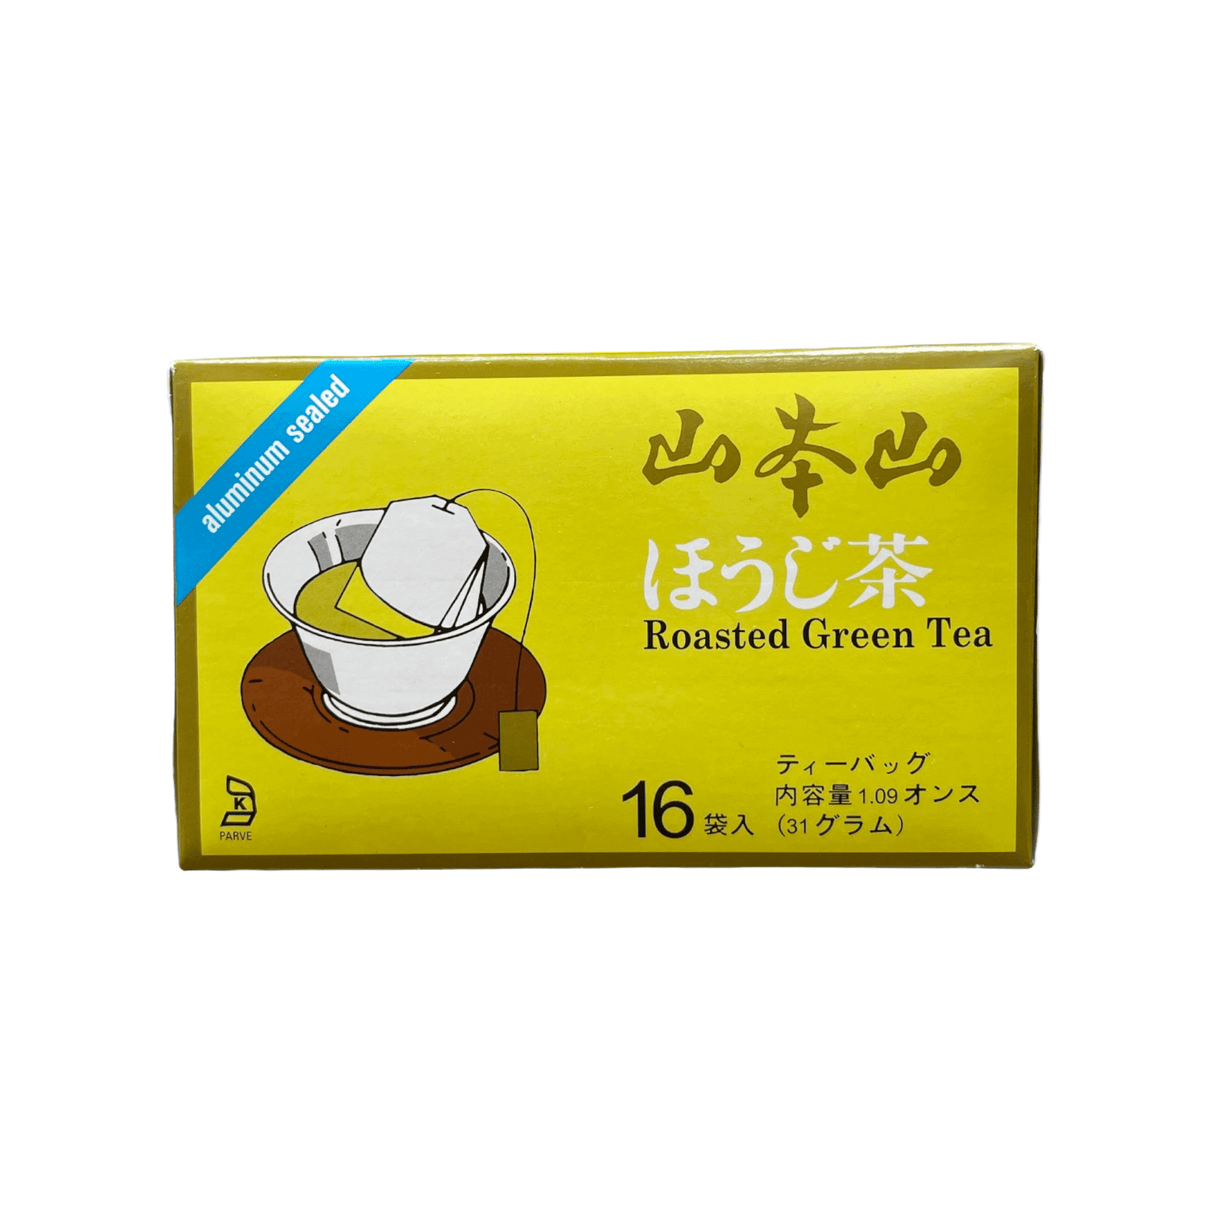 Yamamotoyama Roasted Green Tea